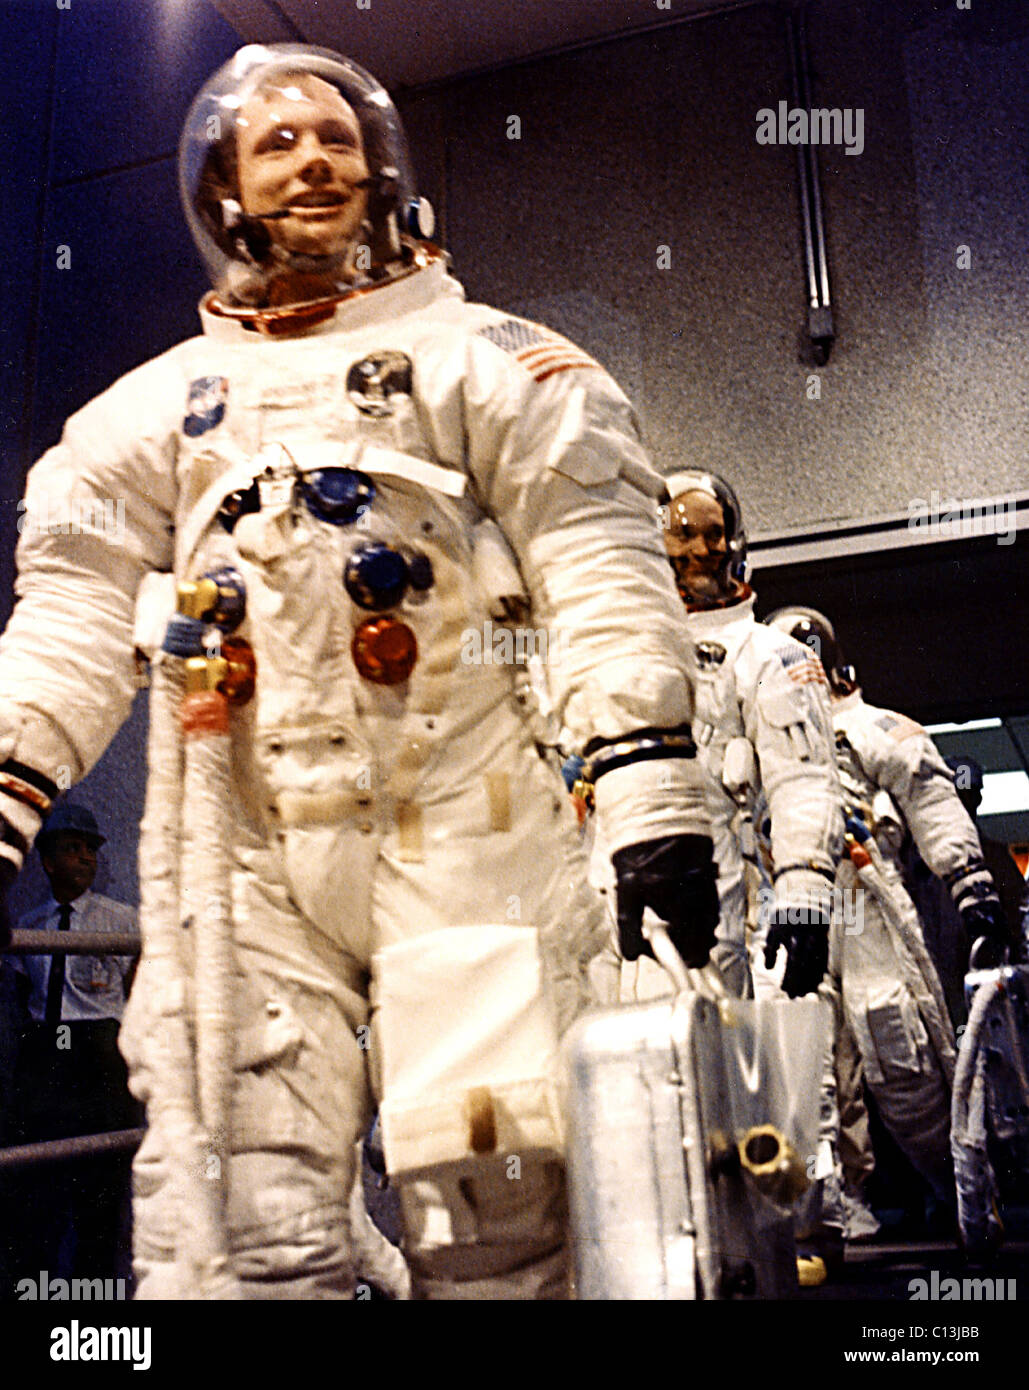 NEIL ARMSTRONG & Crew, Kopf, um das Raumschiff Apollo 11, Reise nach dem Mond, Juli 1969. (c) NASA. Höflichkeit: Everett Collection. Stockfoto